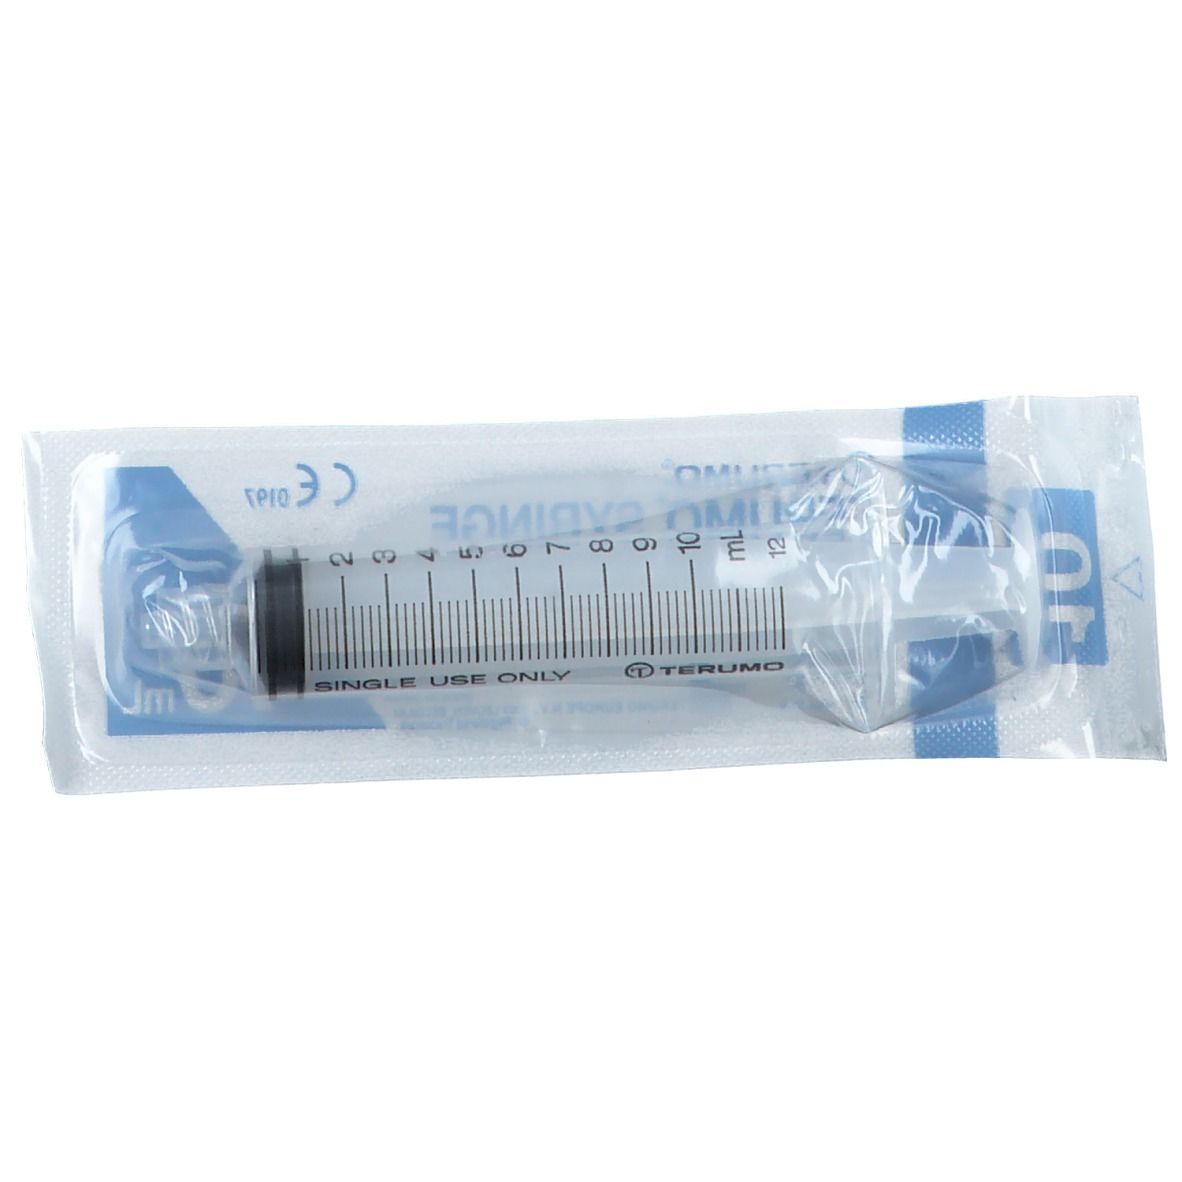 Terumo Disposable Syringe Without Needle Luer Lock 10ml